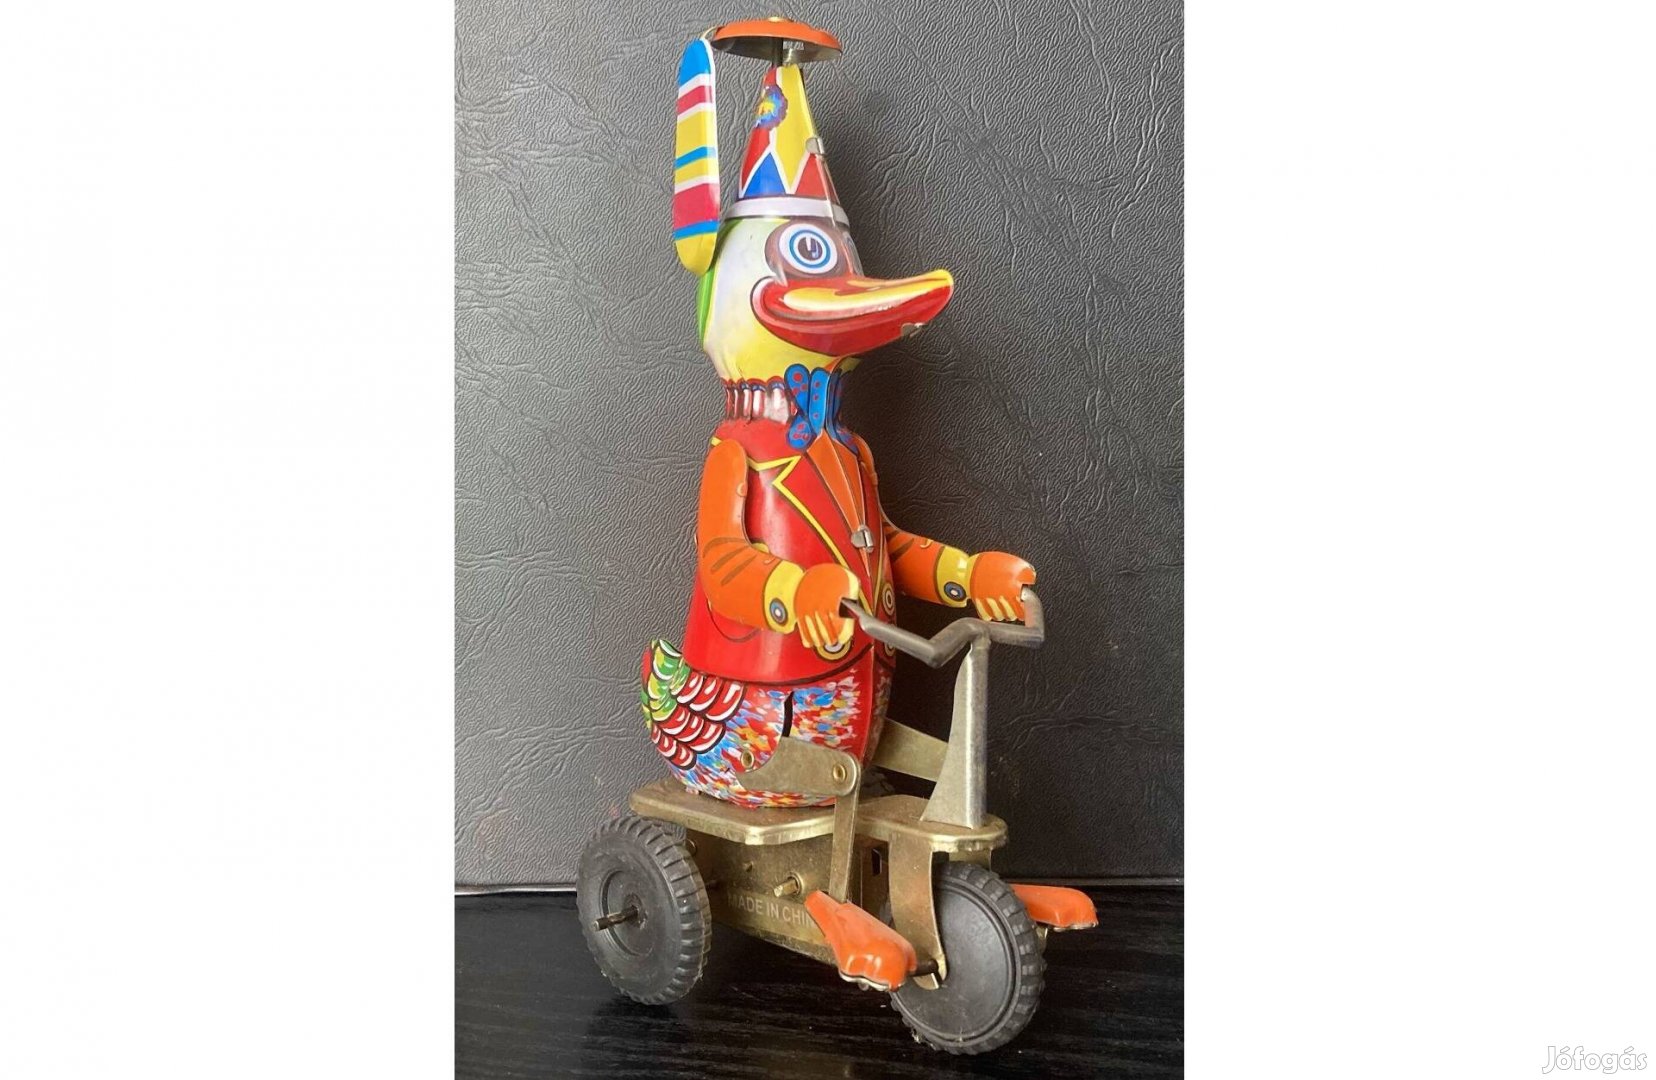 Óraműves, forgó kalapú, színes, biciklis kacsa a régi gyerekszobából